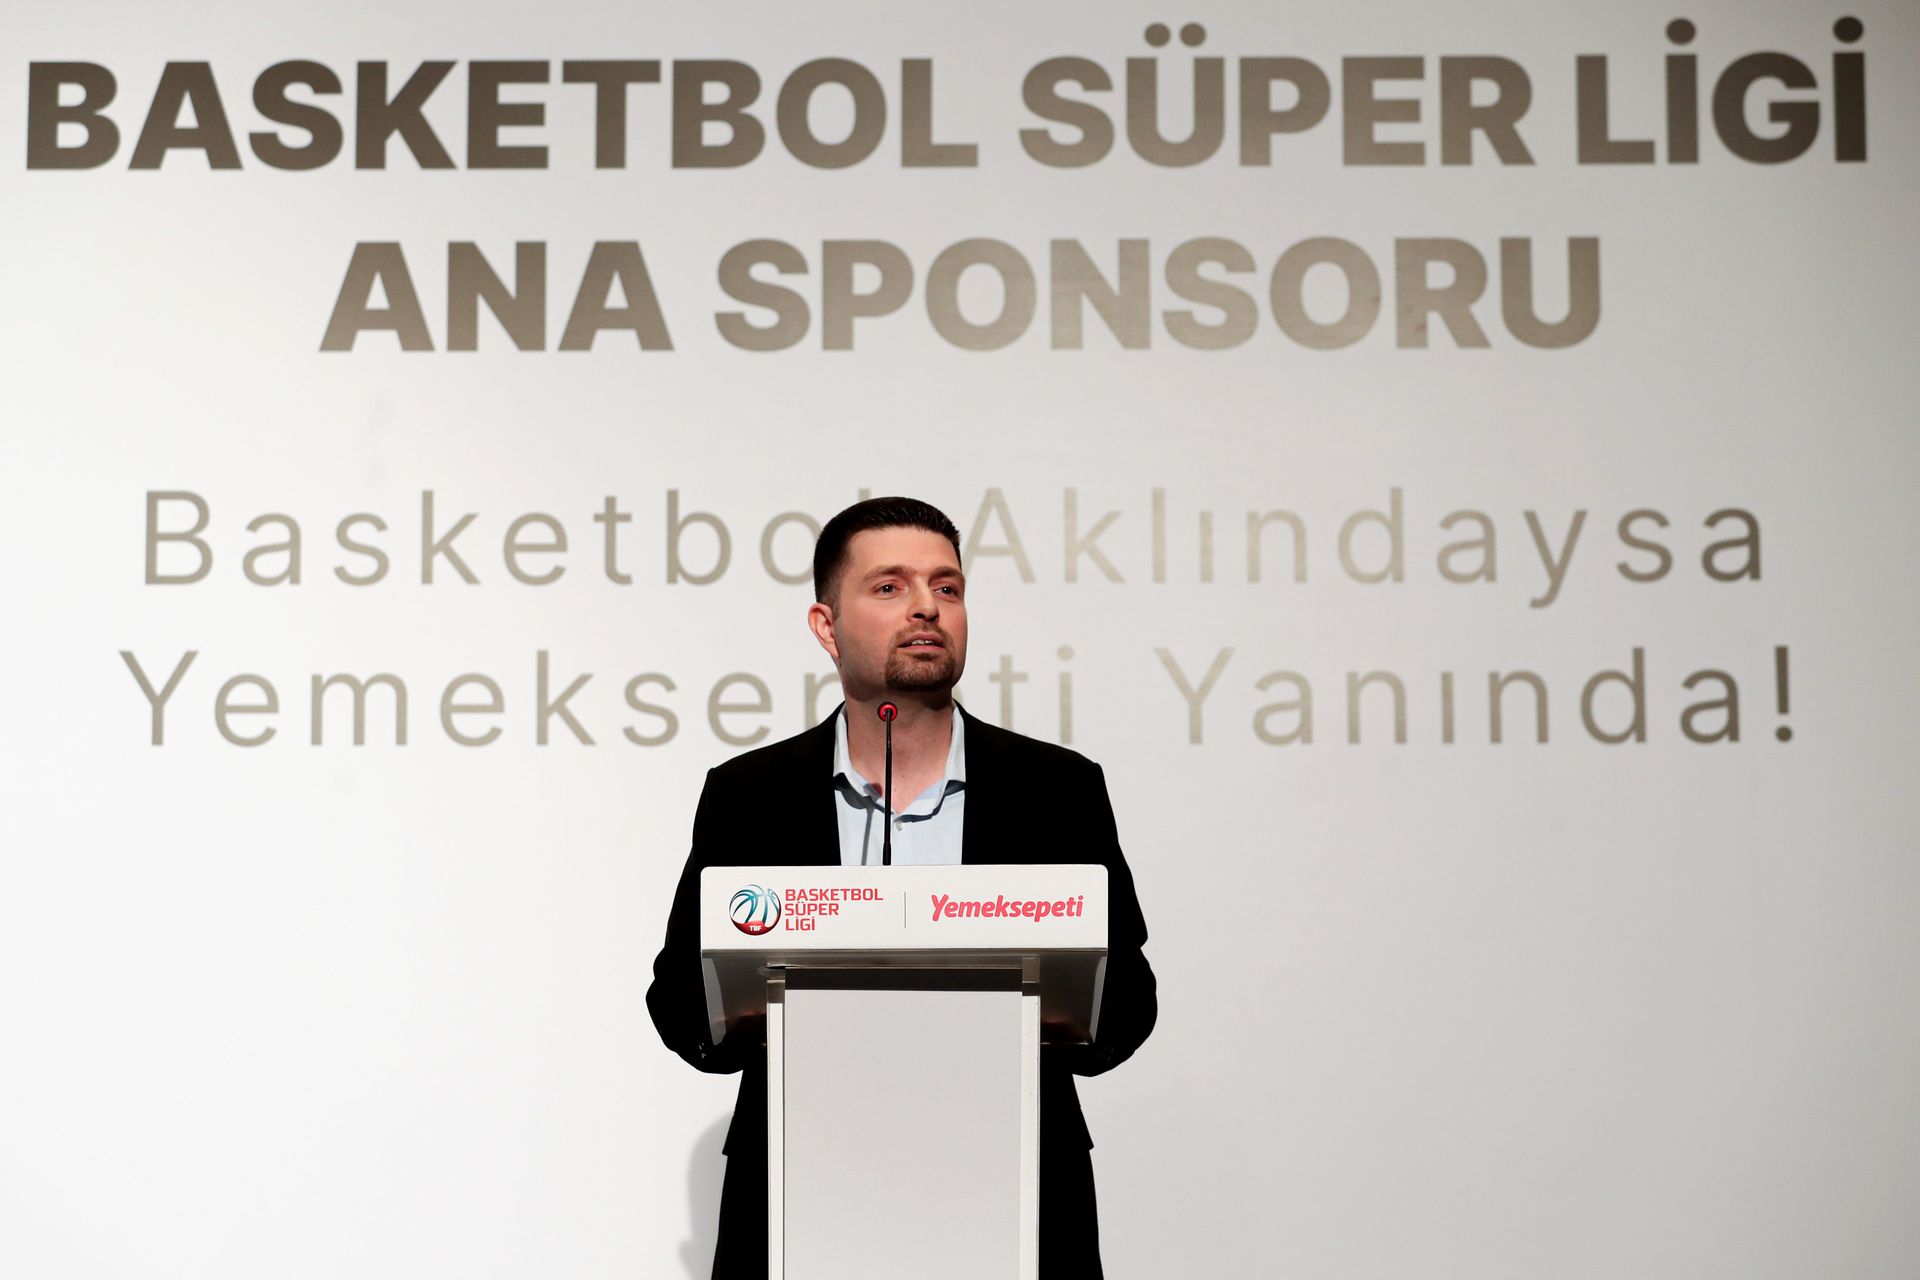 Yemeksepeti, Basketbol Süper Ligi'nin ana sponsoru oldu